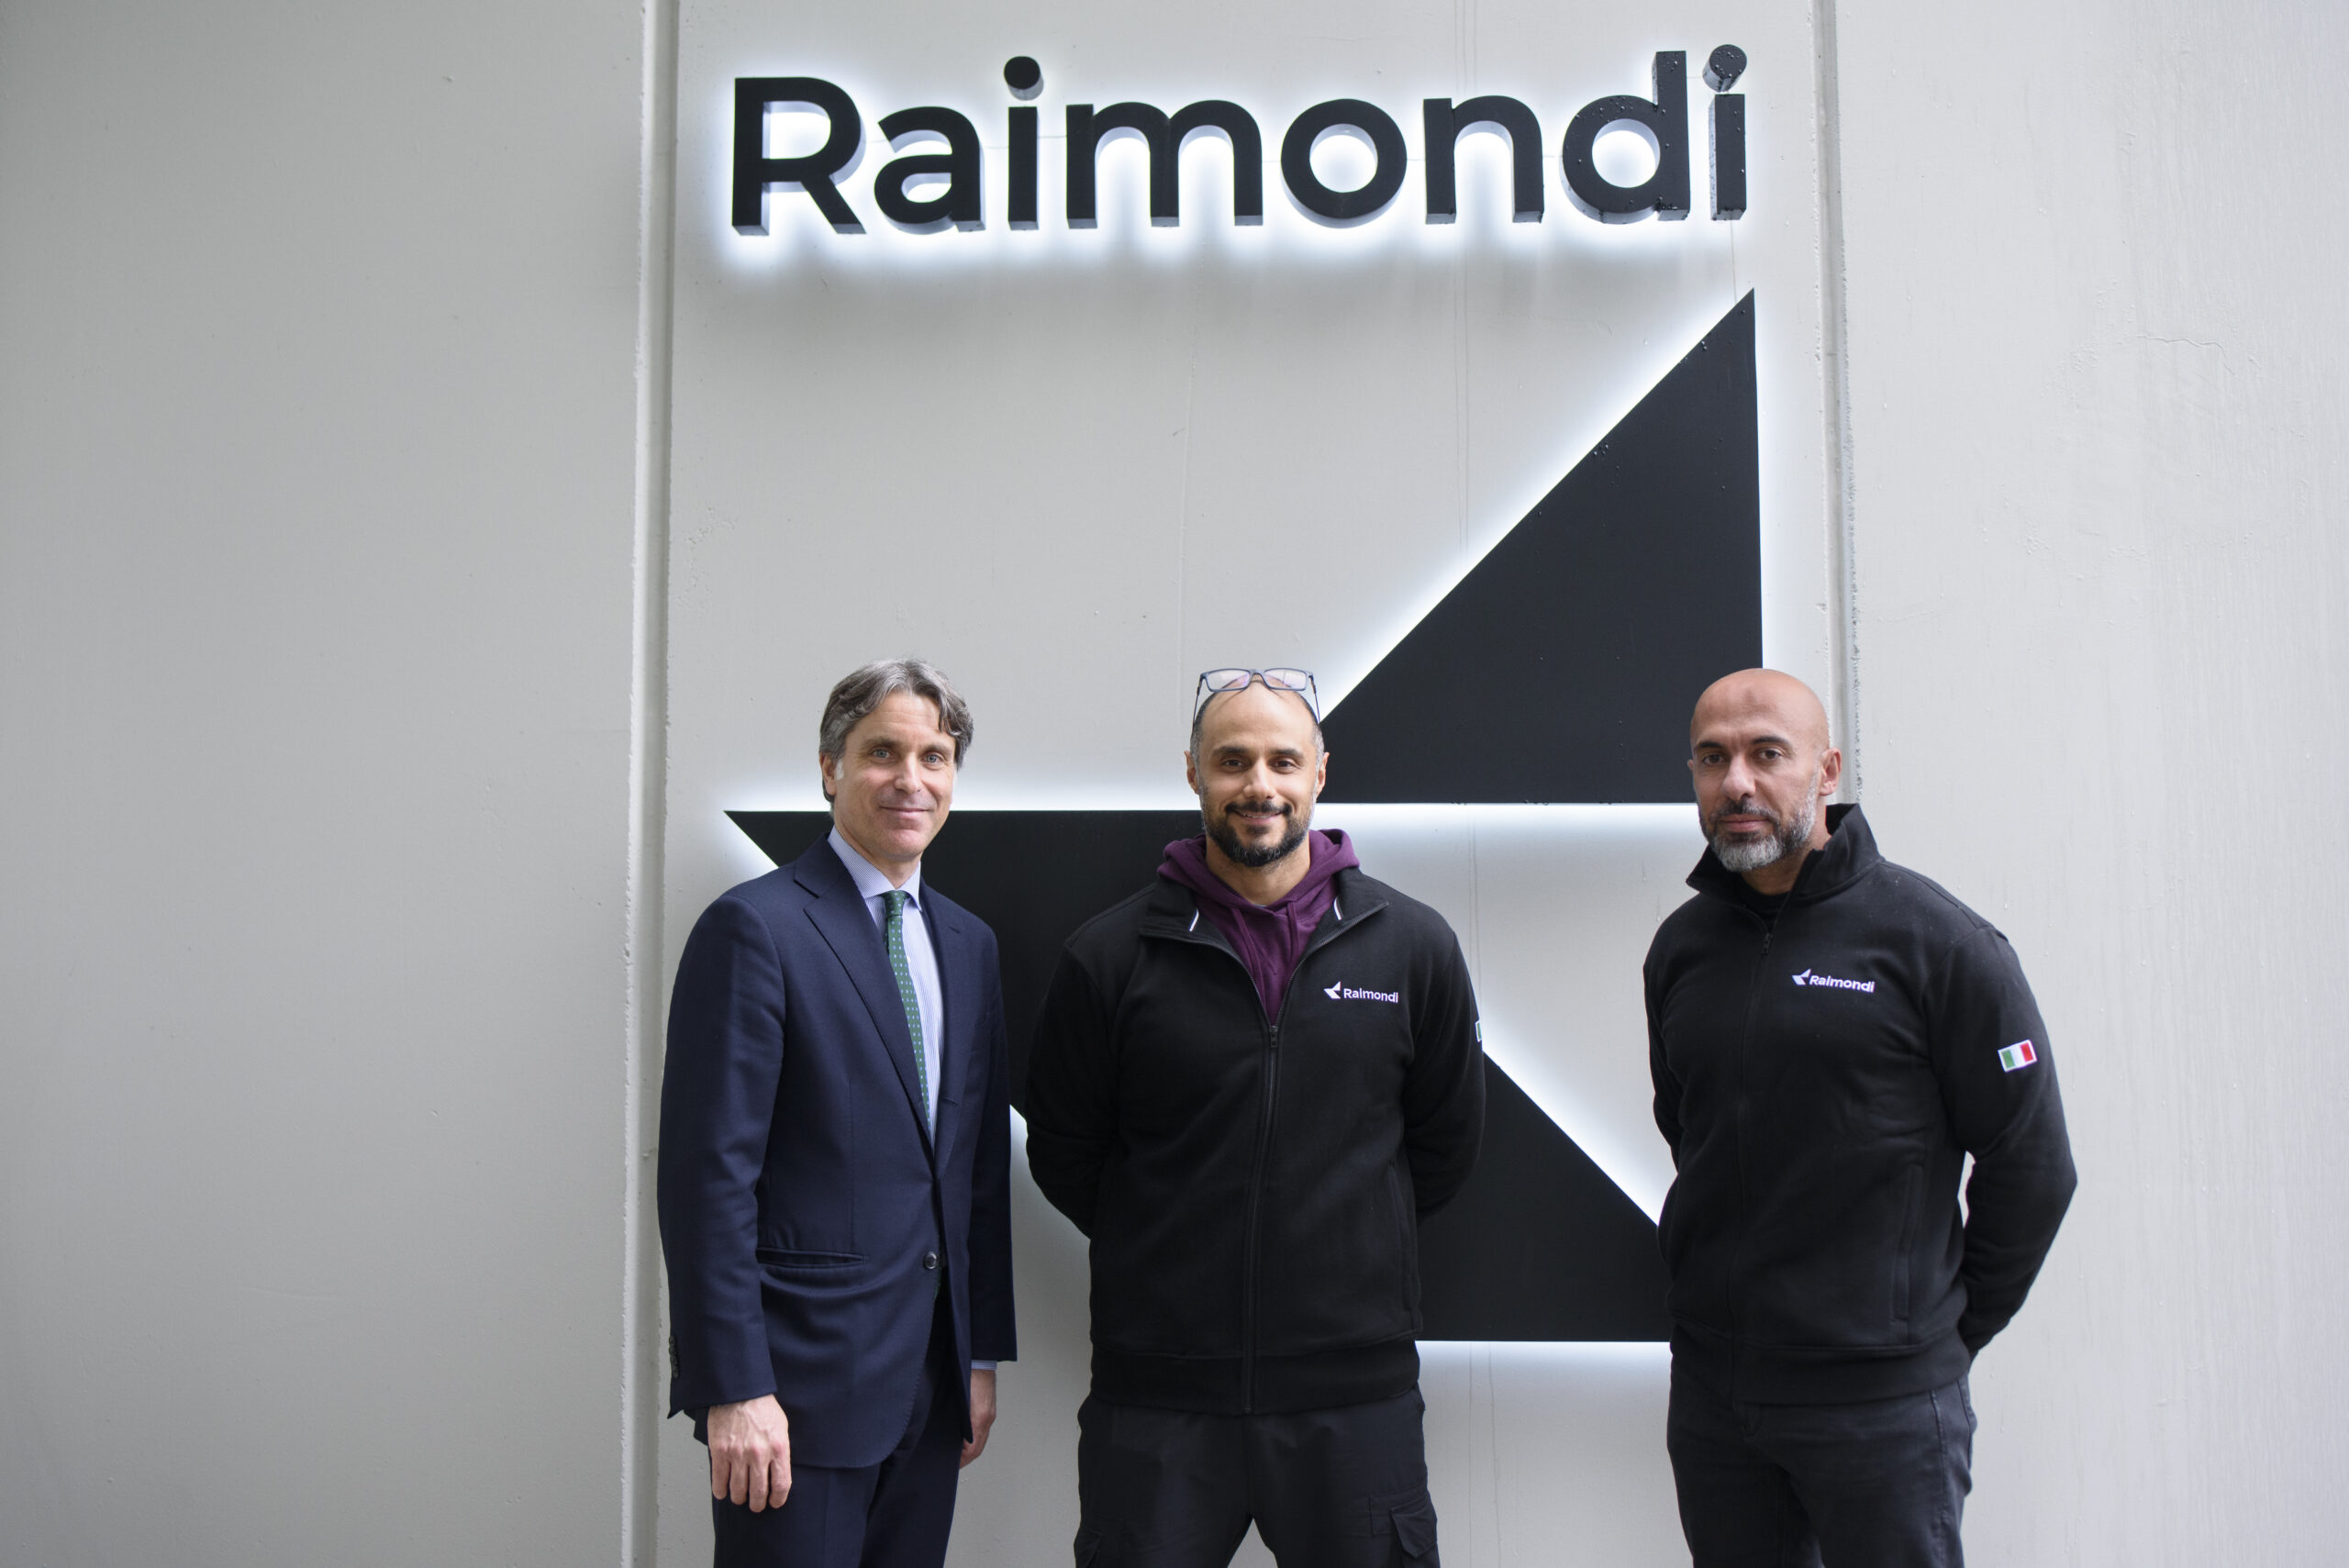 Raimondi Cranes annuncia la nomina di Luigi Maggioni come CEO, inaugurando una nuova fase di espansione aziendale attraverso una serie di nuove iniziative